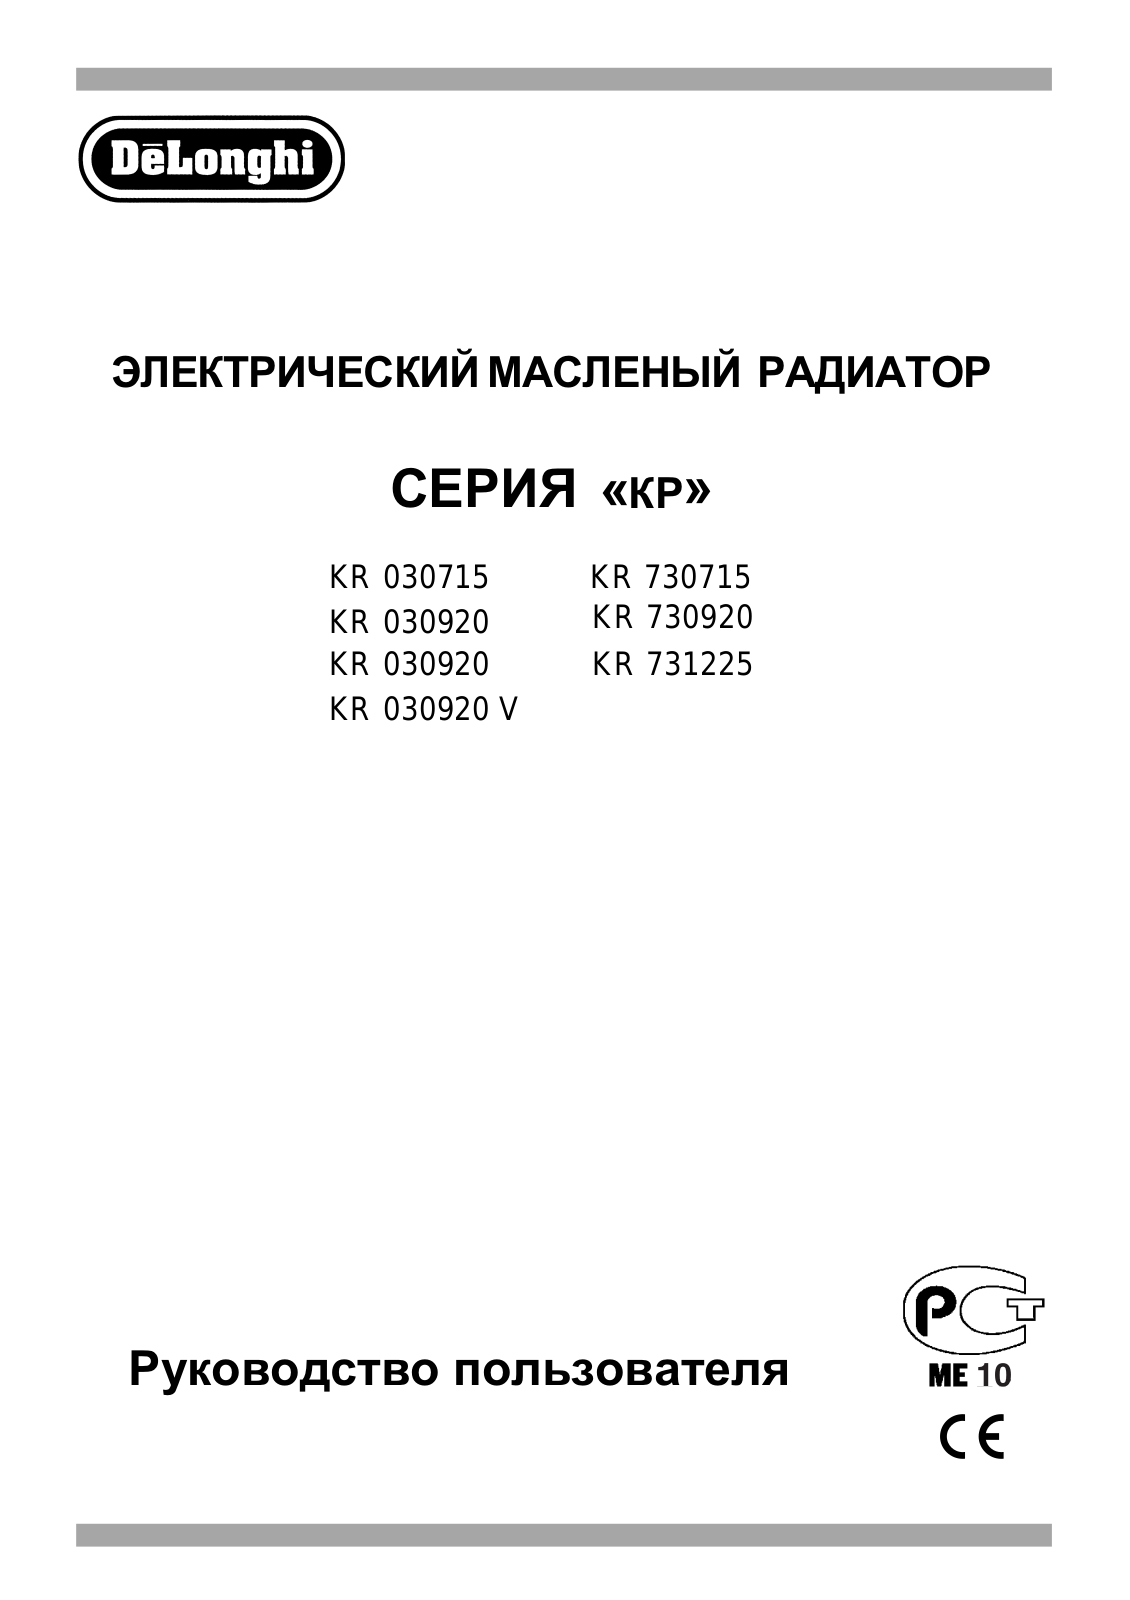 Delonghi KR790925 V, KR790720 V User Manual